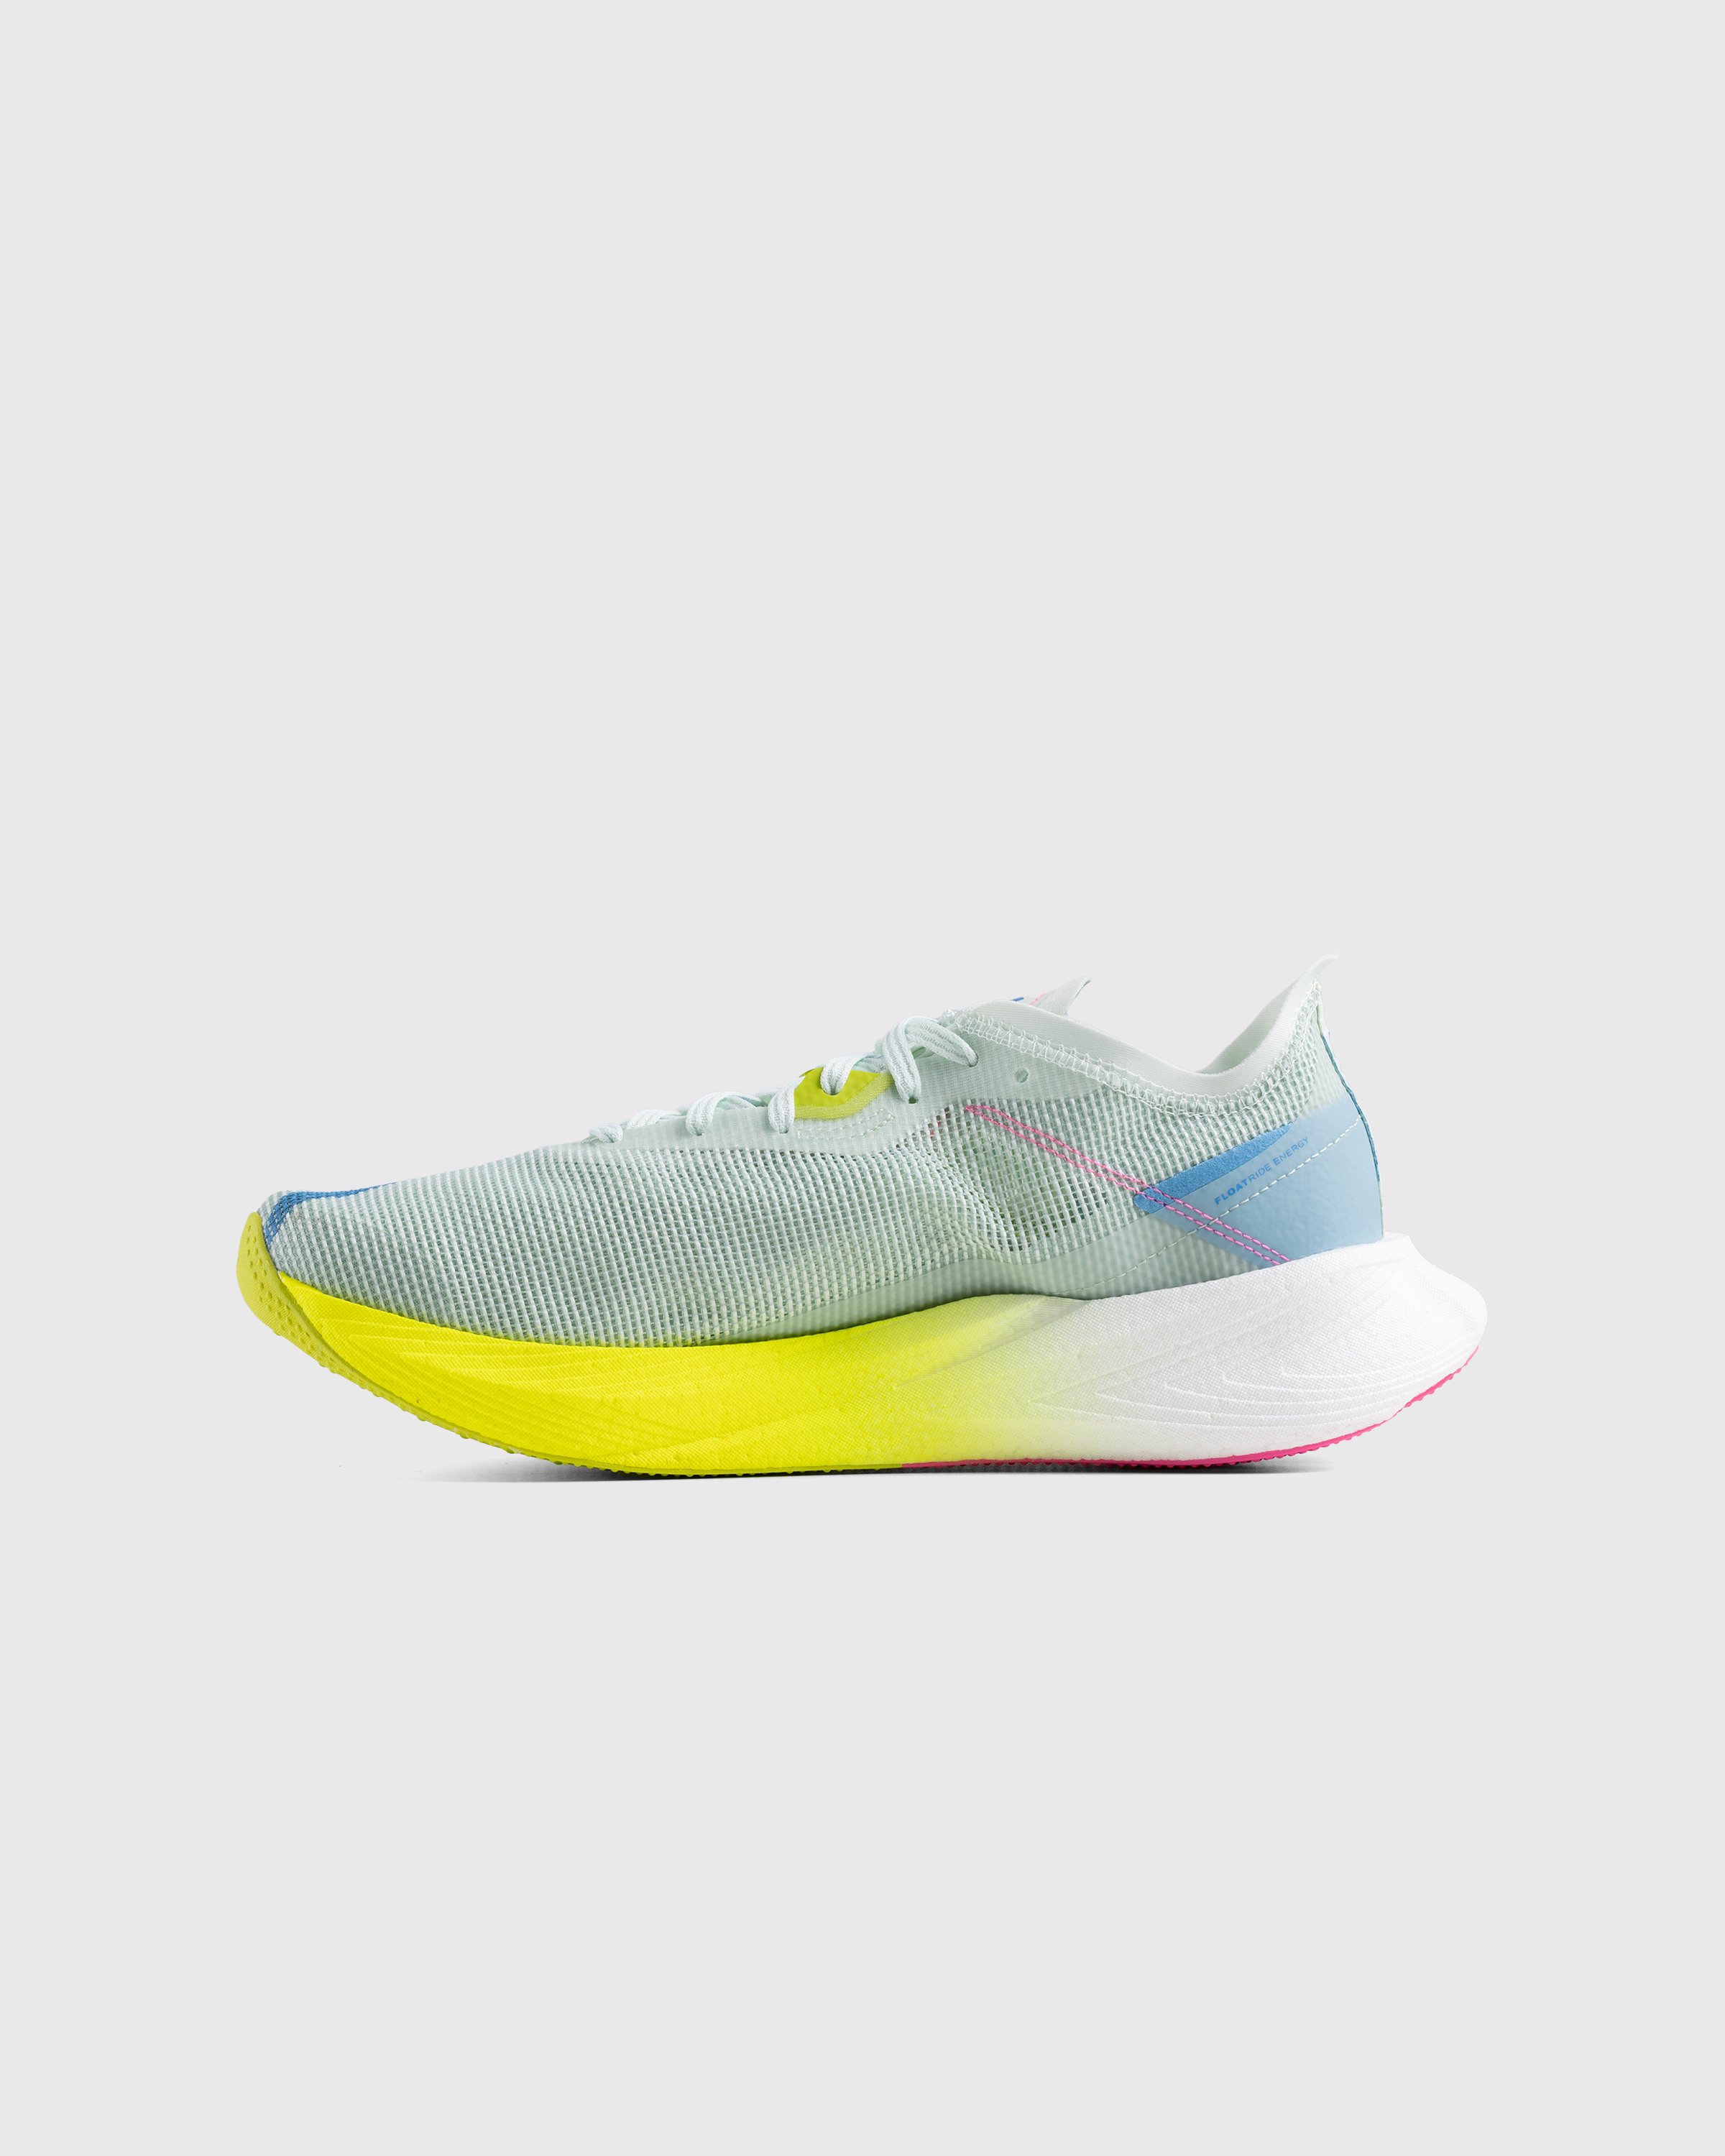 Reebok - Floatride Energy X Yellow/Blue - Footwear - Multi - Image 4